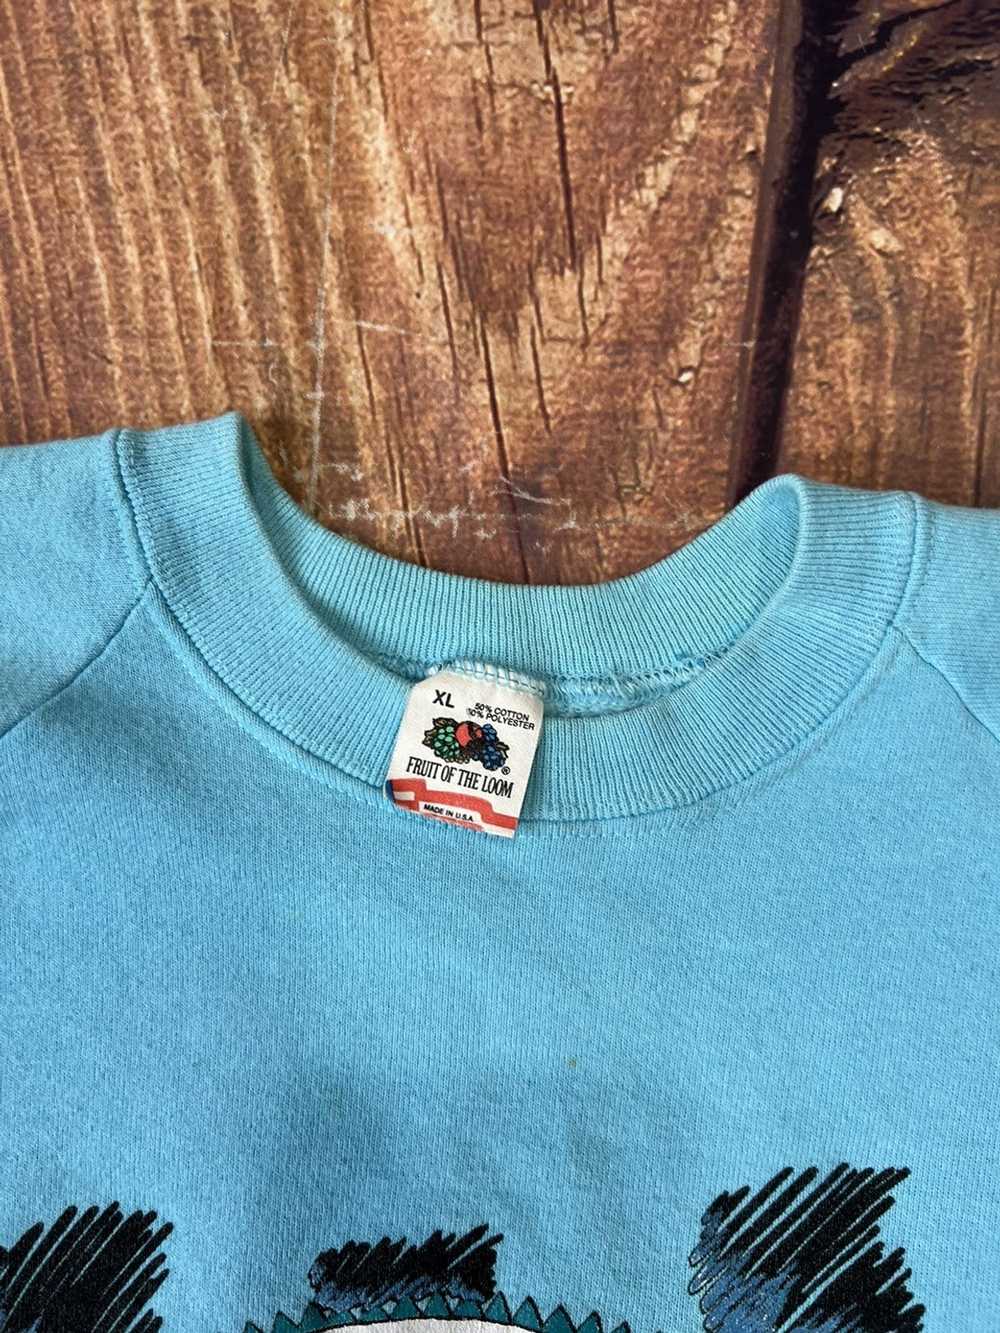 NASCAR × Vintage Vintage NASCAR Sweatshirt - image 9